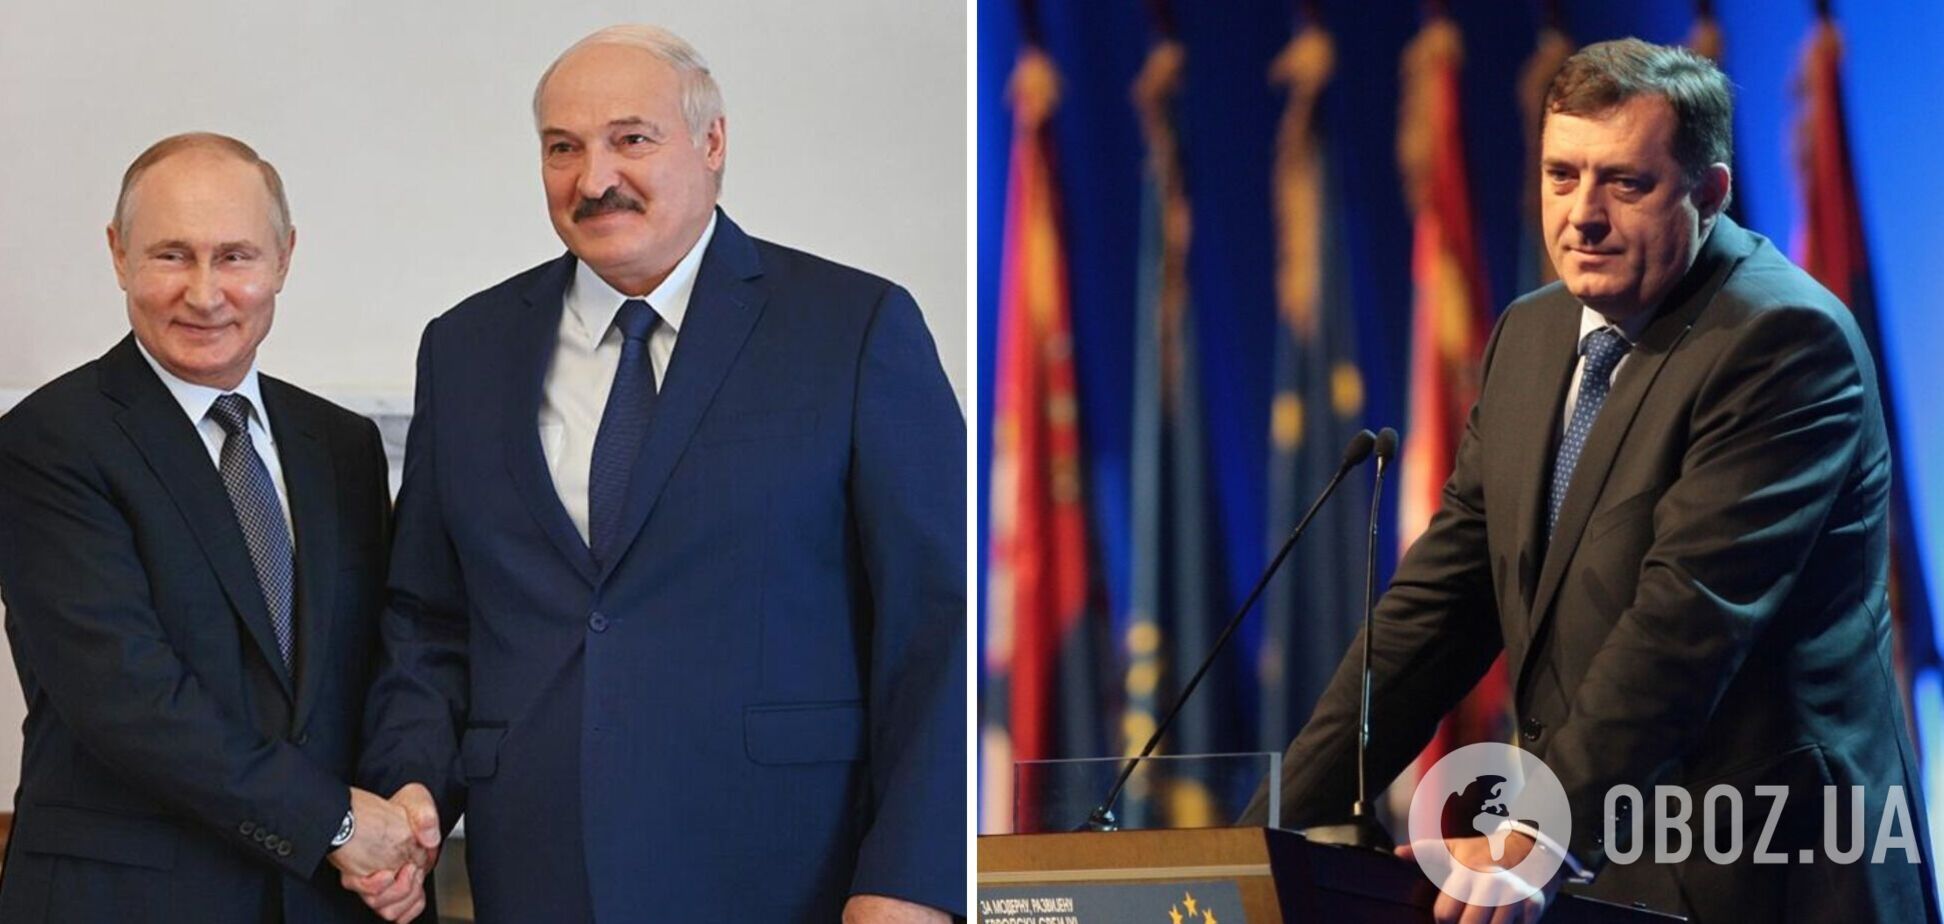 Путин и Лукашенко разжигают войну в Европе?!